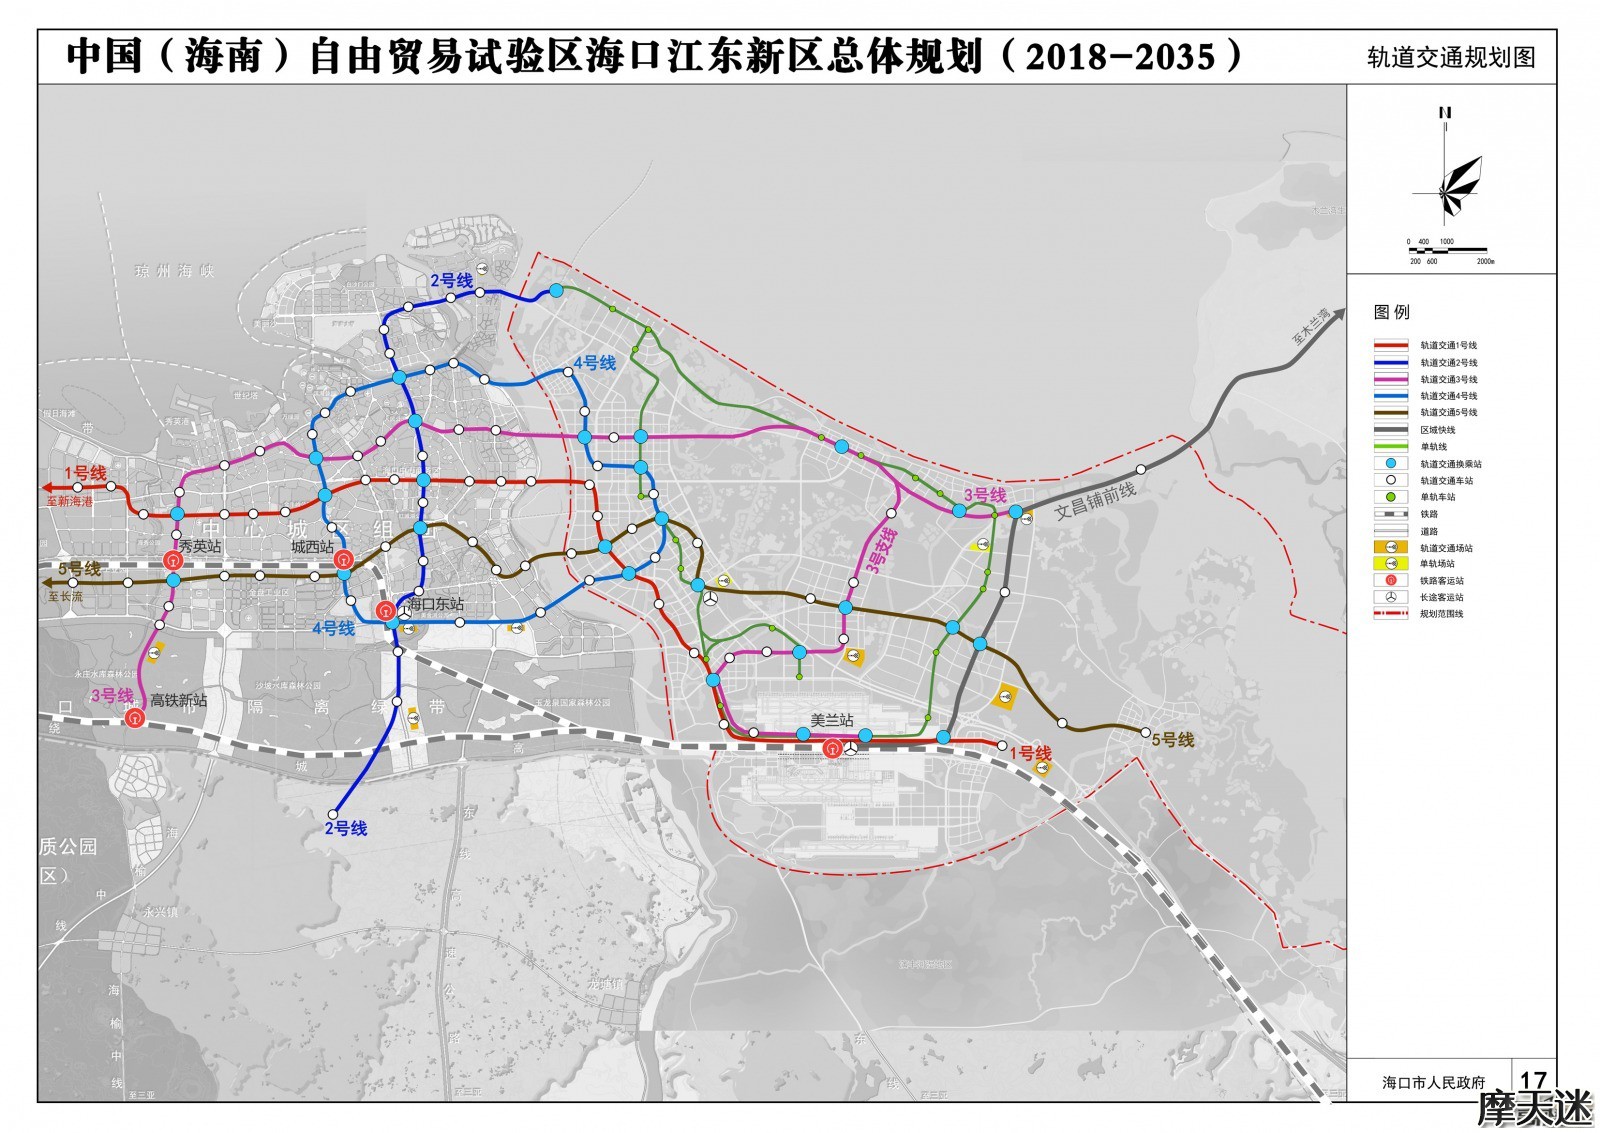 17轨道交通规划图.jpg